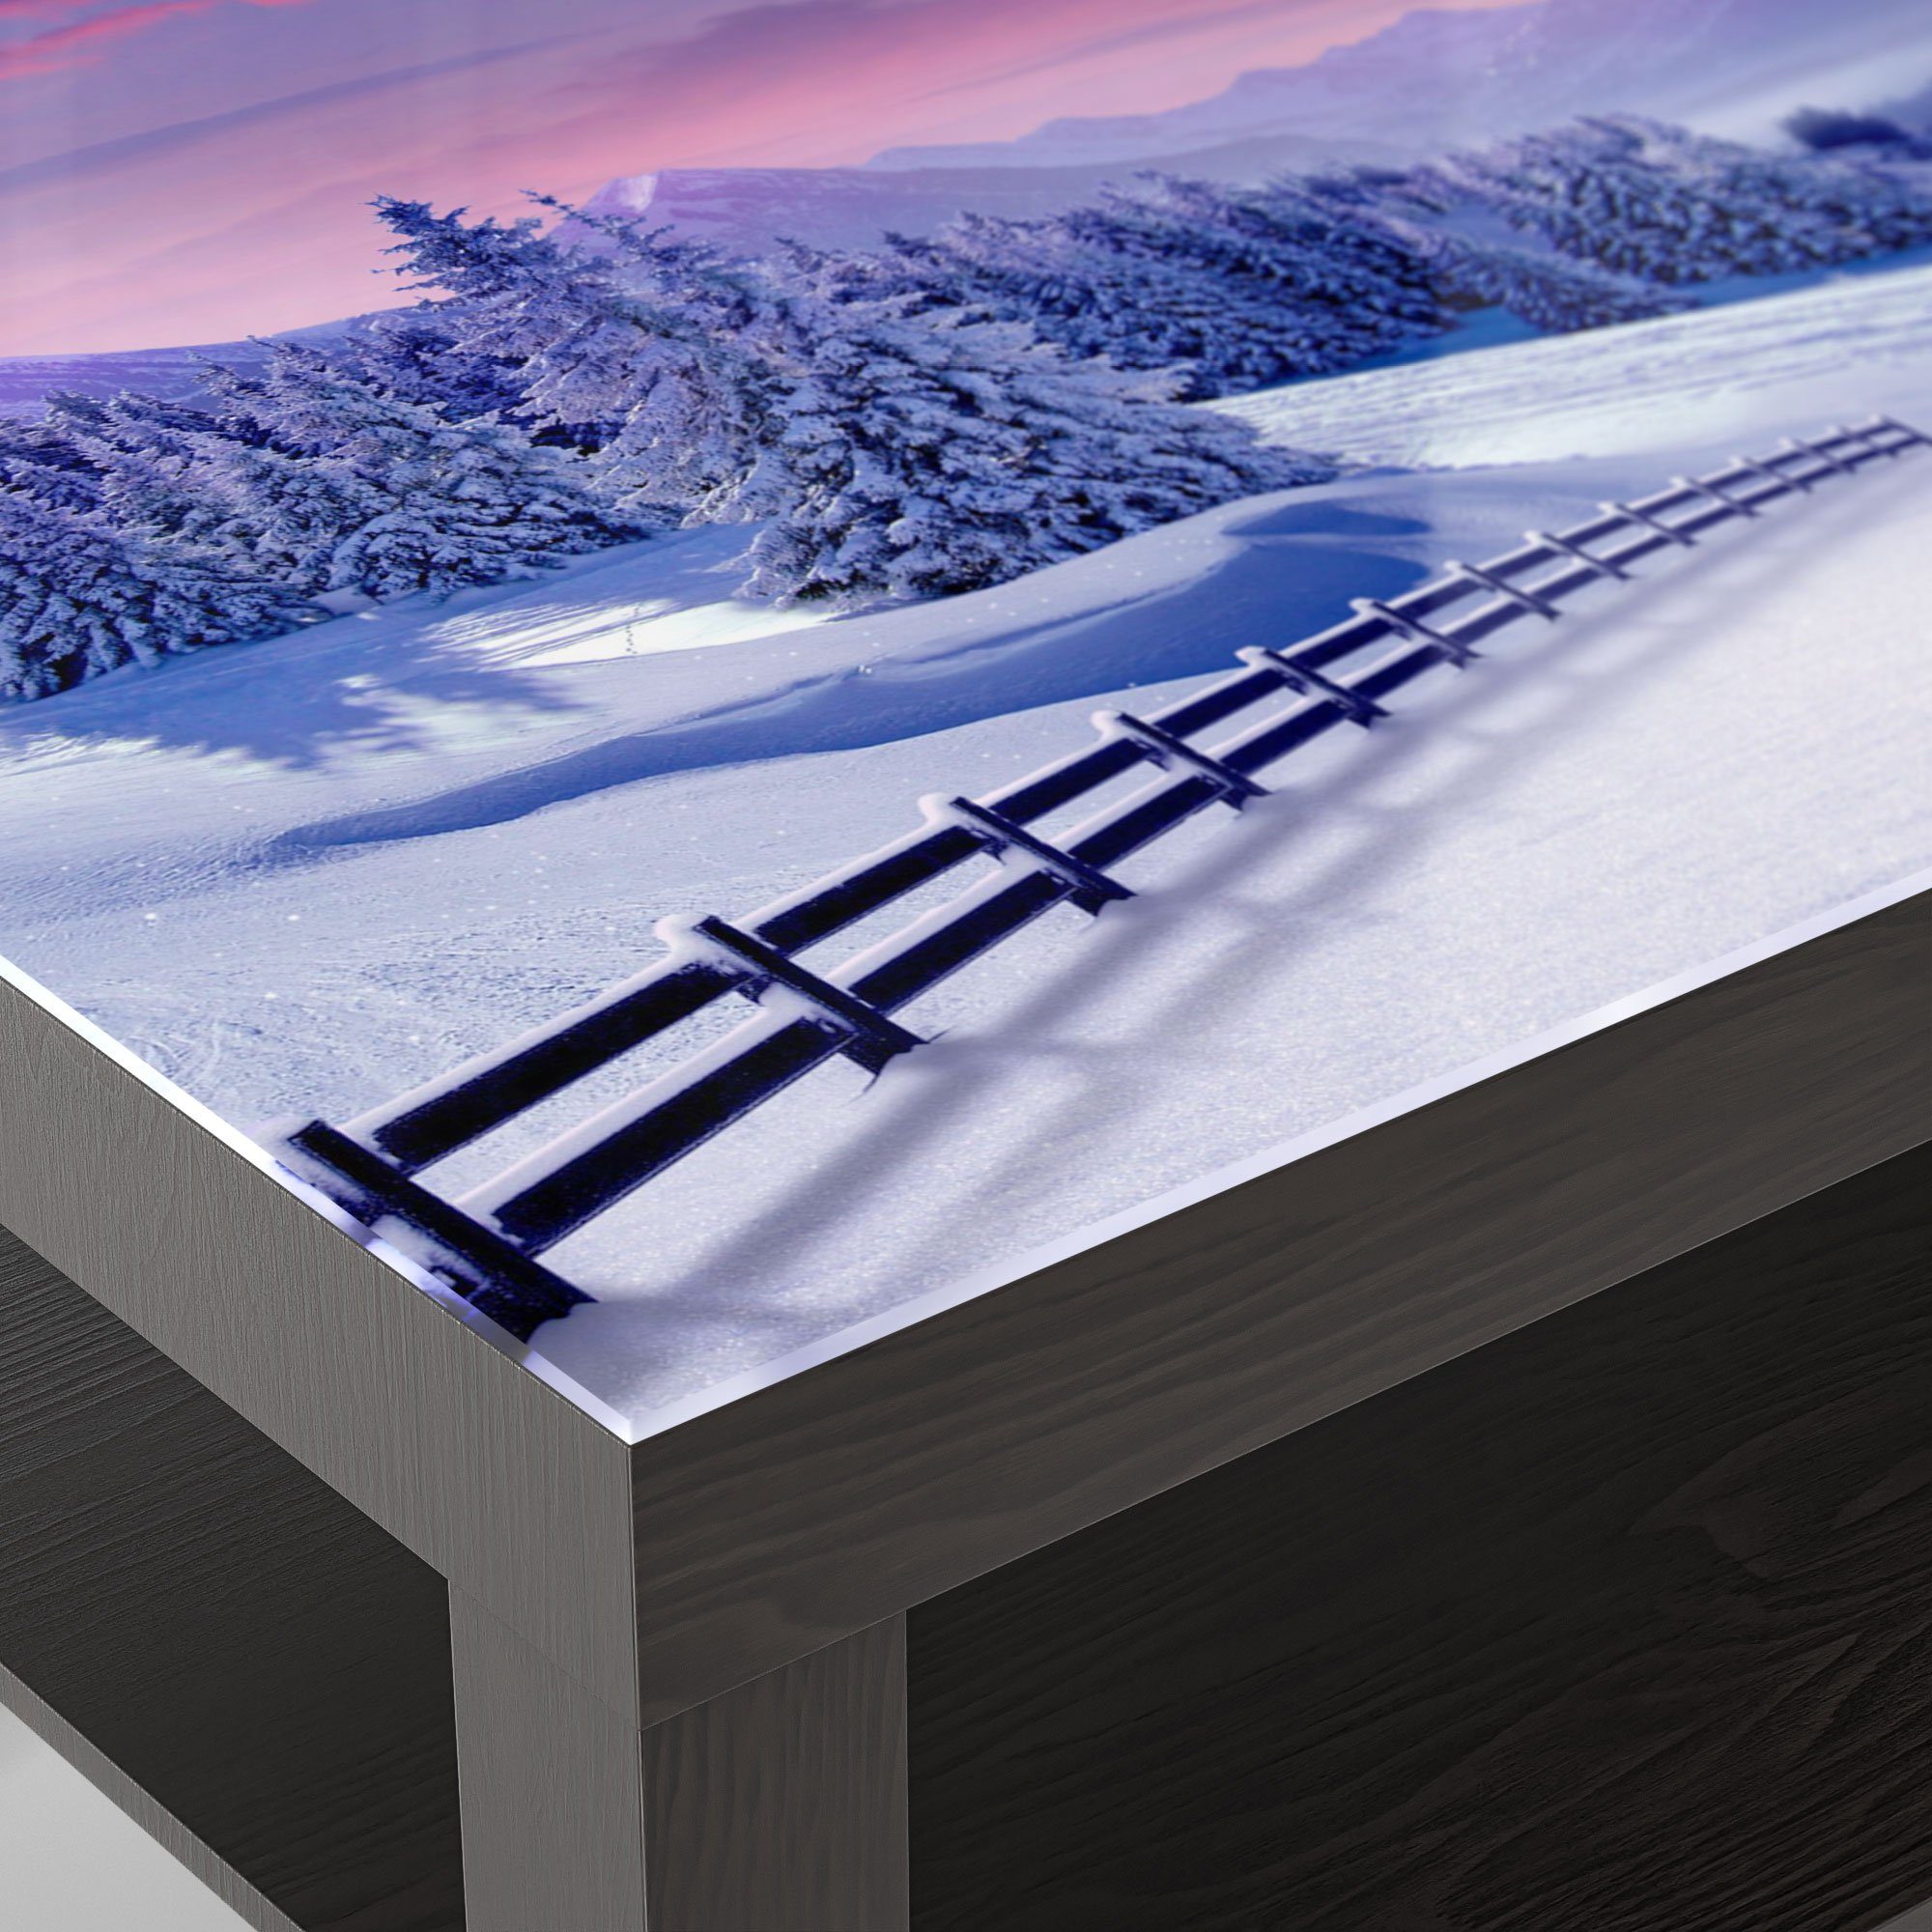 DEQORI Couchtisch 'Winterliches Gebirgsidyll', modern Beistelltisch Schwarz Glas Glastisch